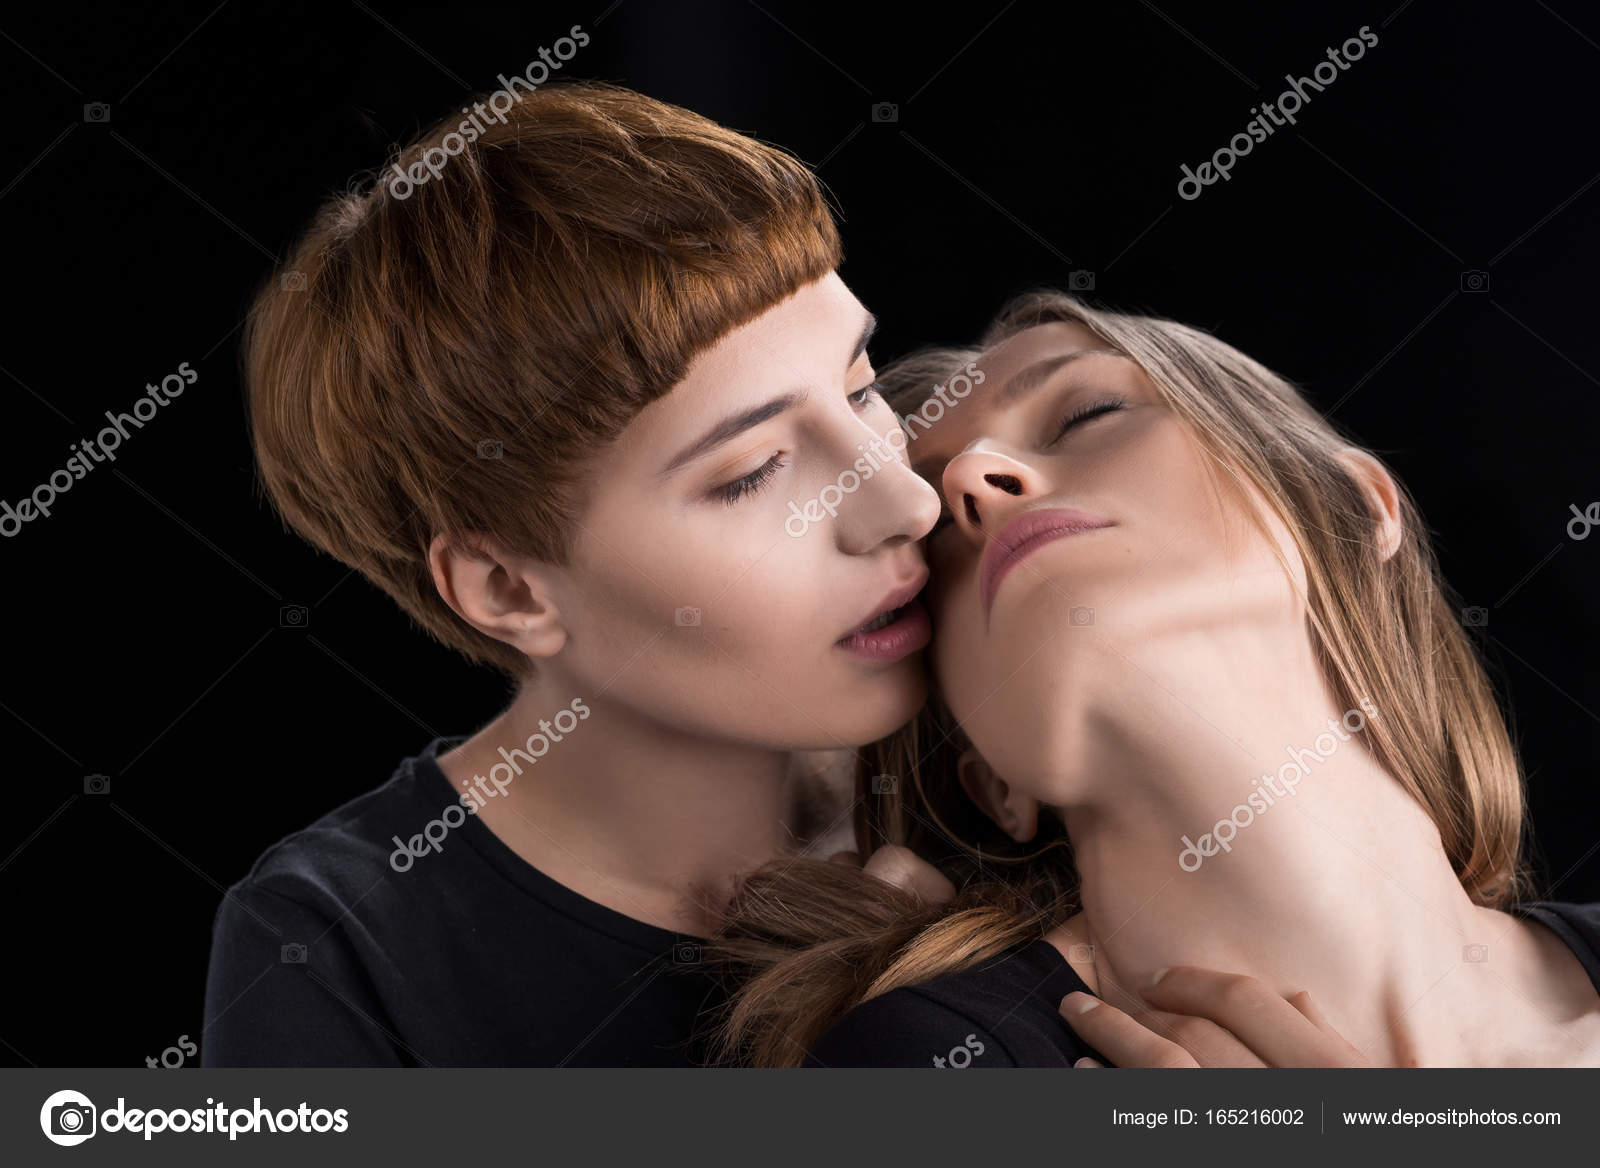 Лесбийская пара склоняется к поцелую стоковое фото ©DimaBaranow 165216002